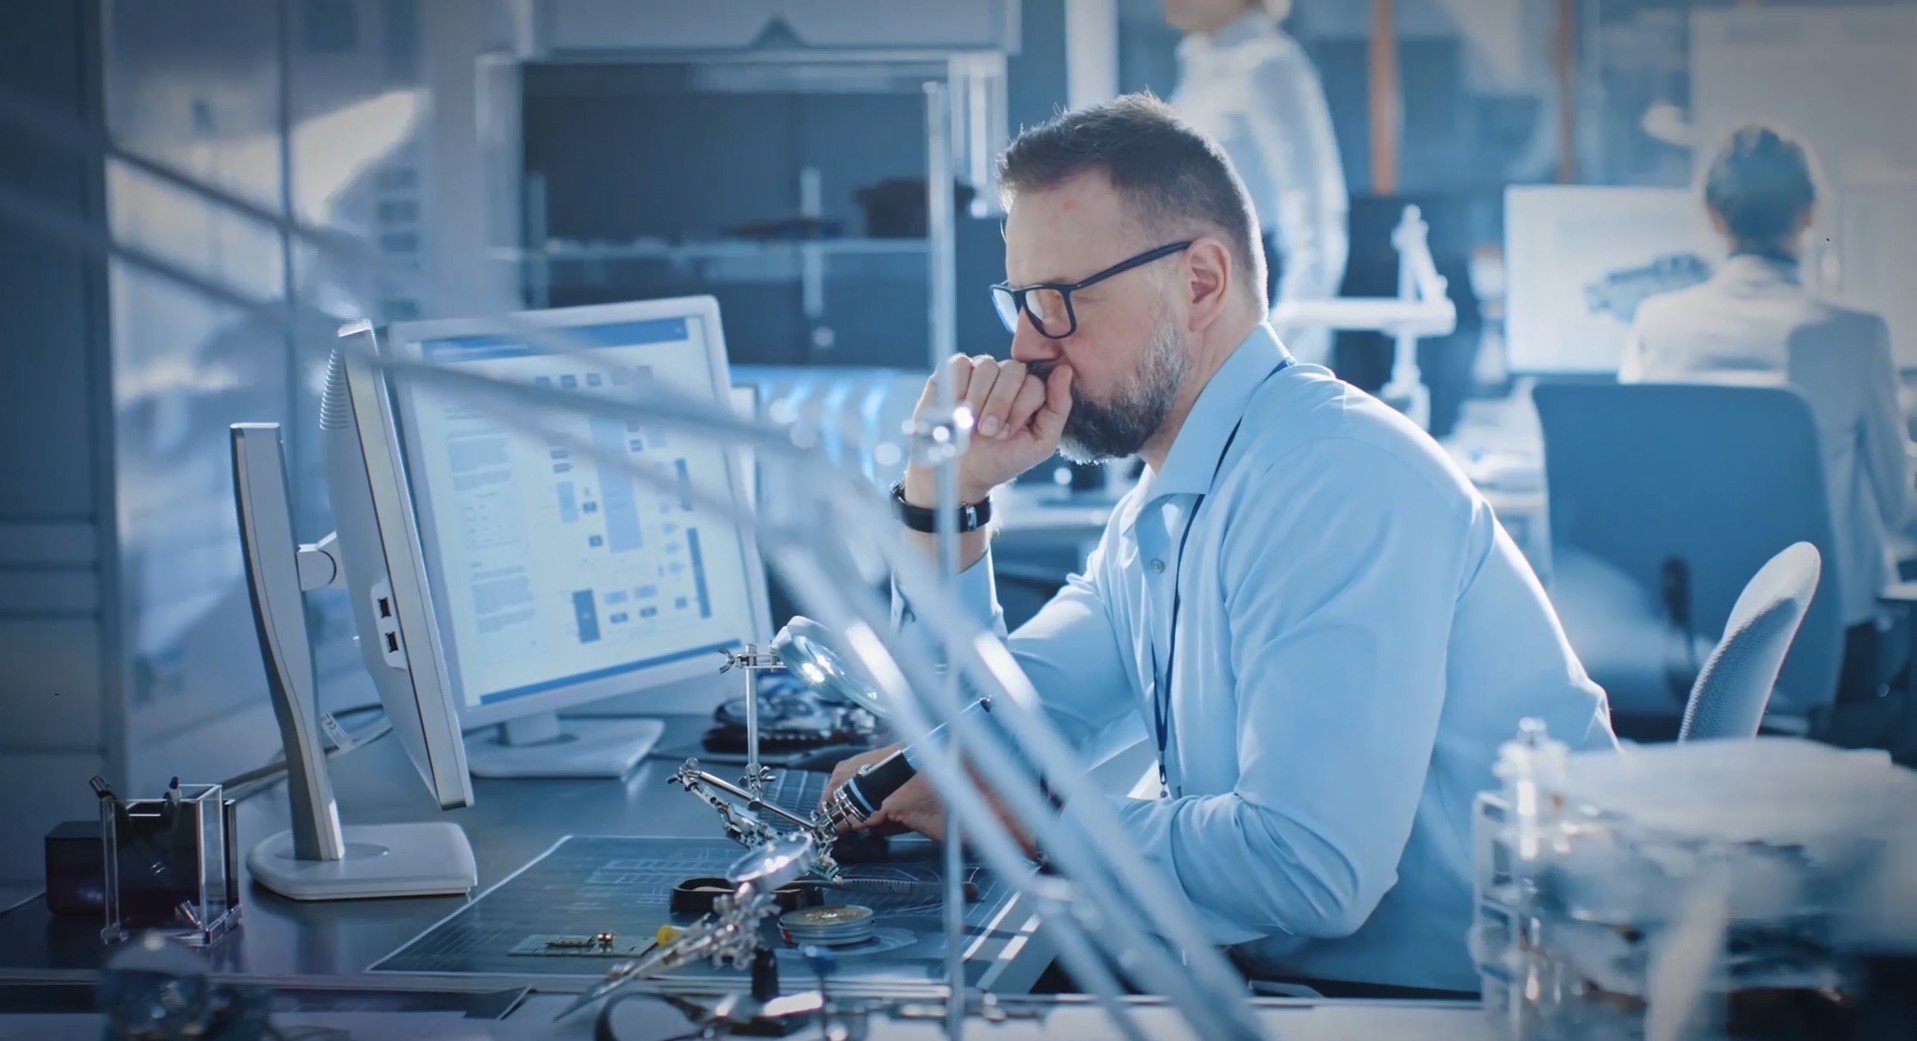 Un uomo con gli occhiali esamina i dati di analisi su un monitor nell’impianto di bioscienze della sua azienda.